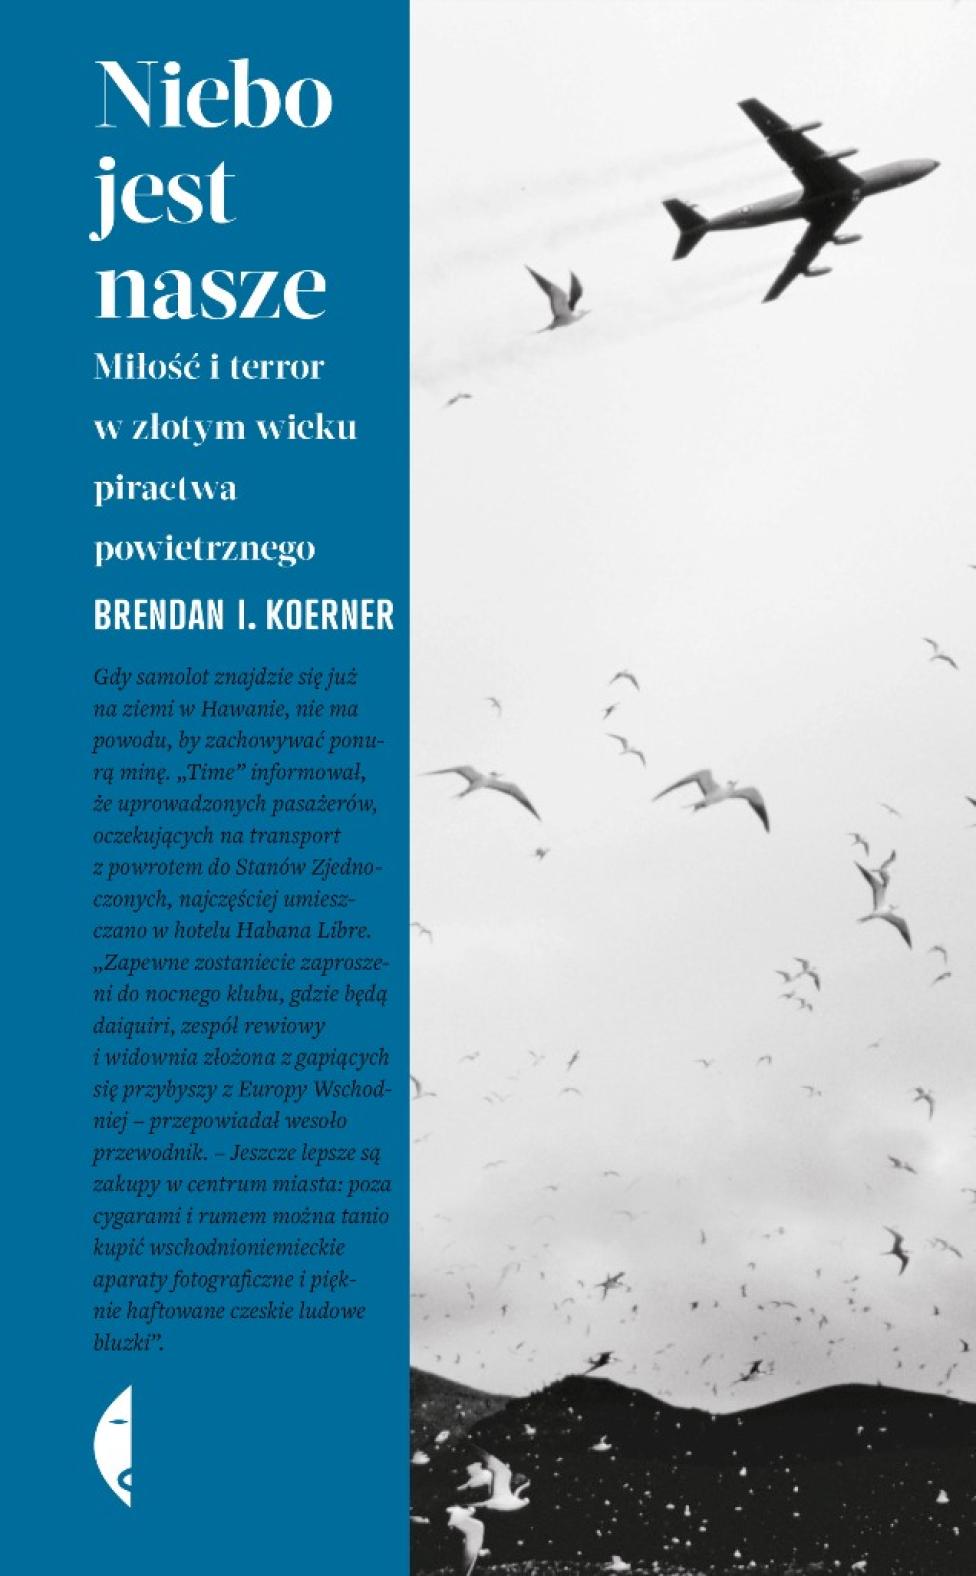 Książka Brendana I. Koernera "Niebo jest nasze. Miłość i terror w złotym wieku piractwa powietrznego"